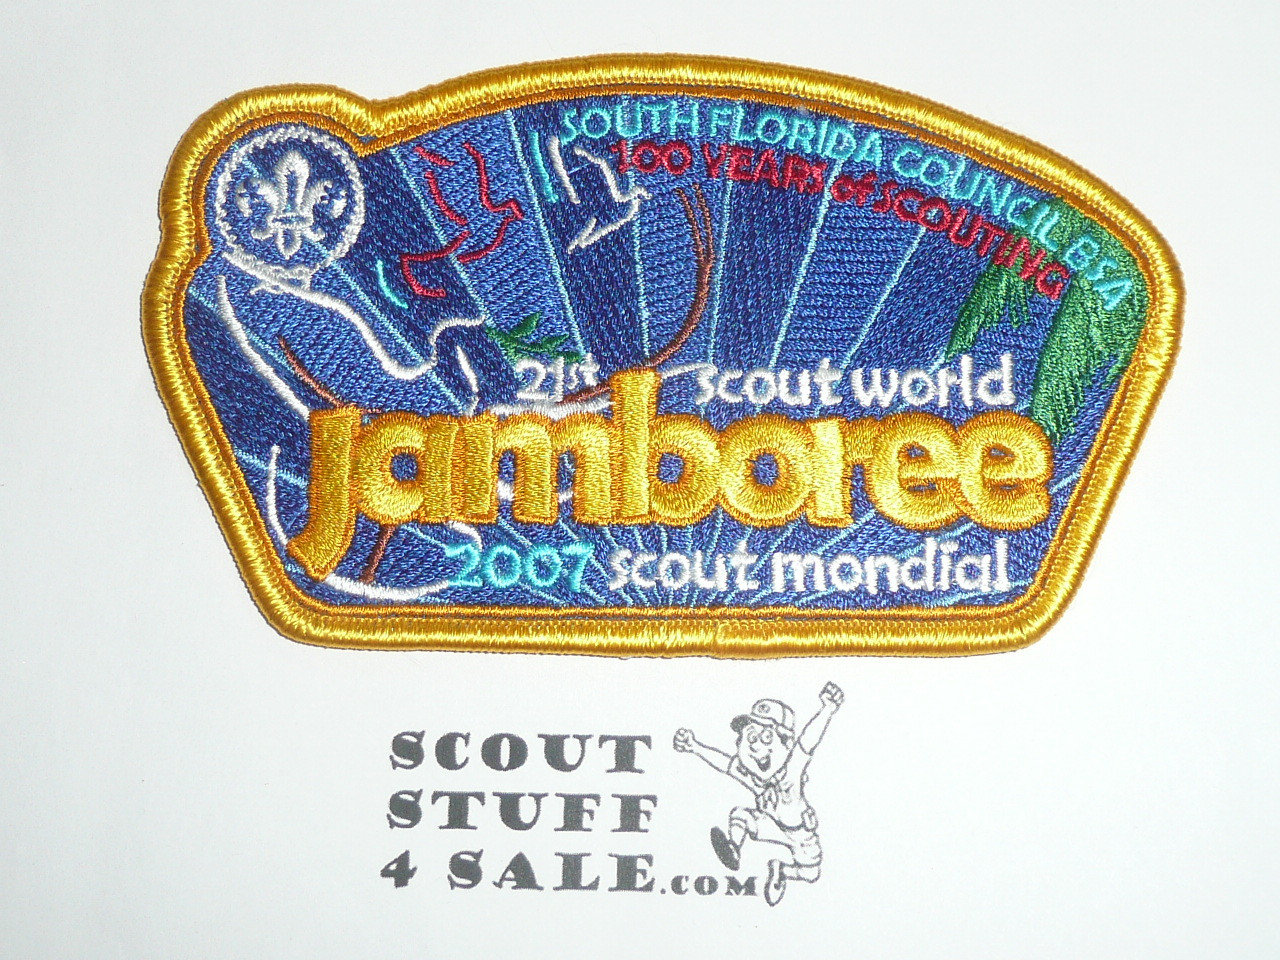 2007 World Jamboree JSP - South Florida Council